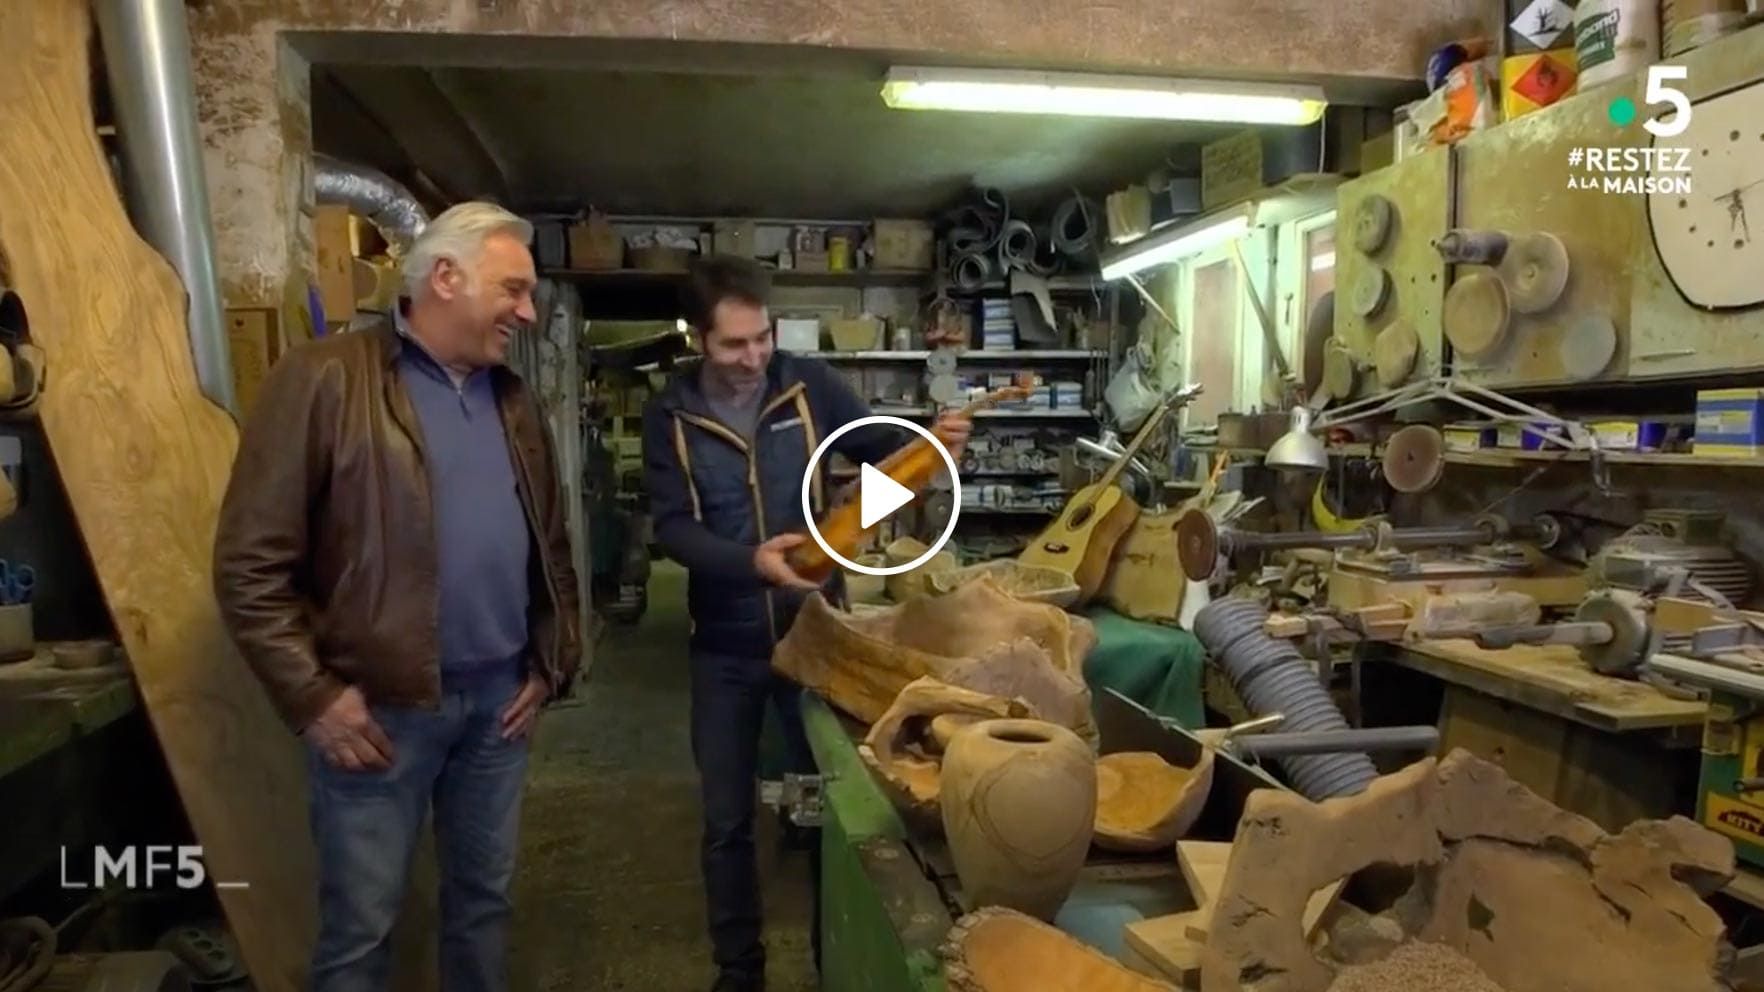 Aperçu de la vidéo passage télévisé du Travail du Bois d'olivier dans La maison France 5